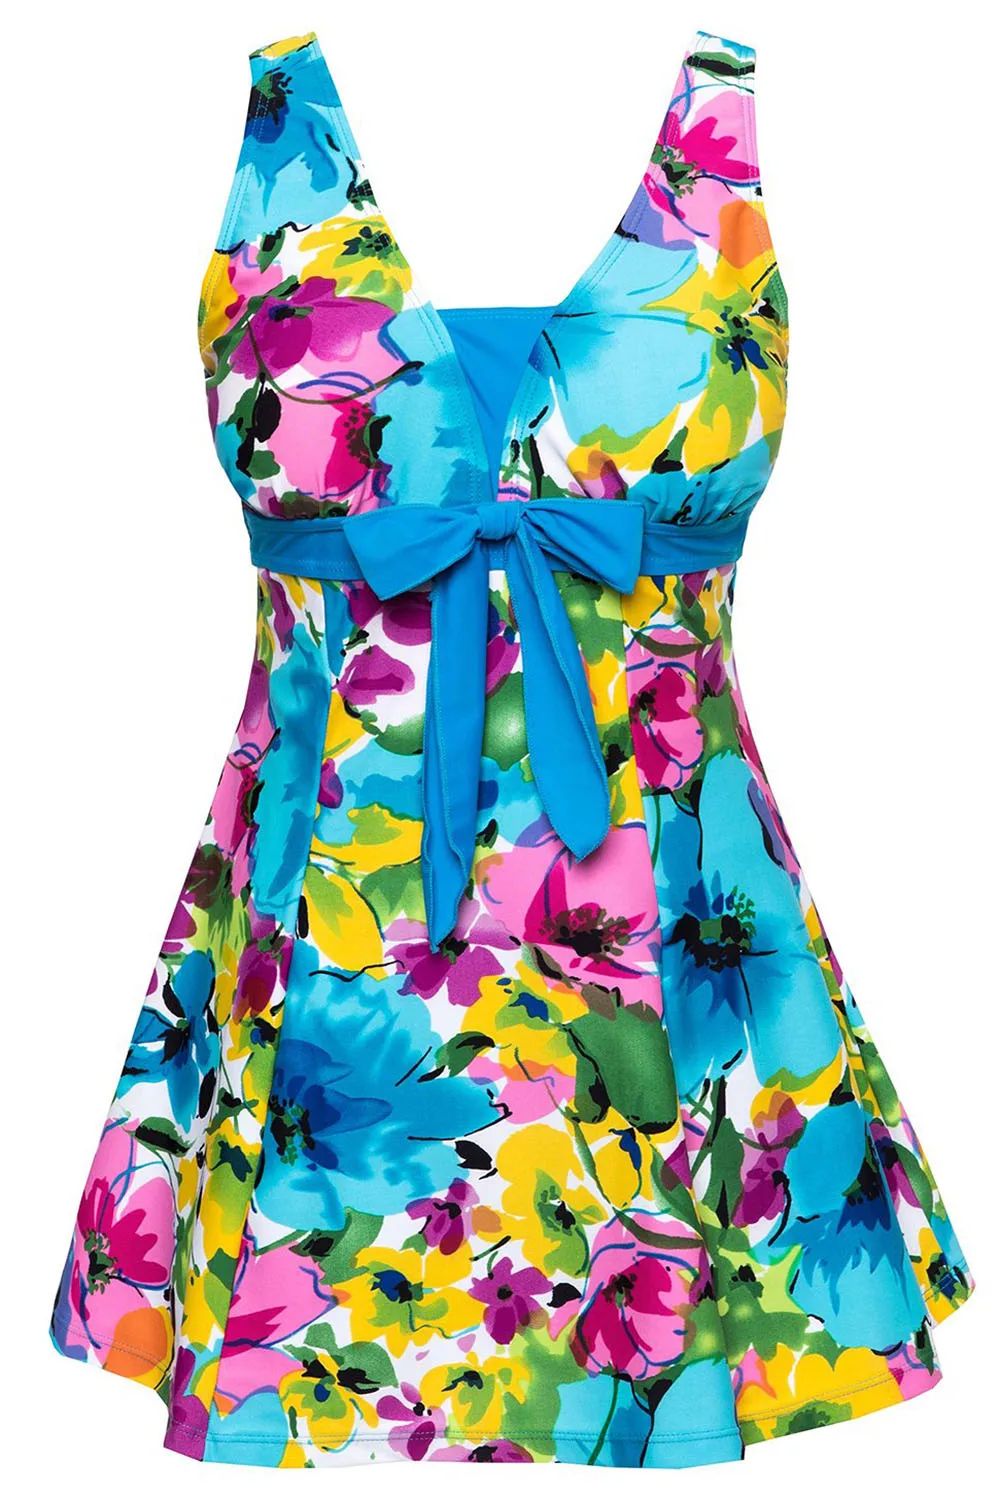 Женская одежда для плавания, купальный костюм, купальник с пуш-ап, цельный купальник - Цвет: Синий